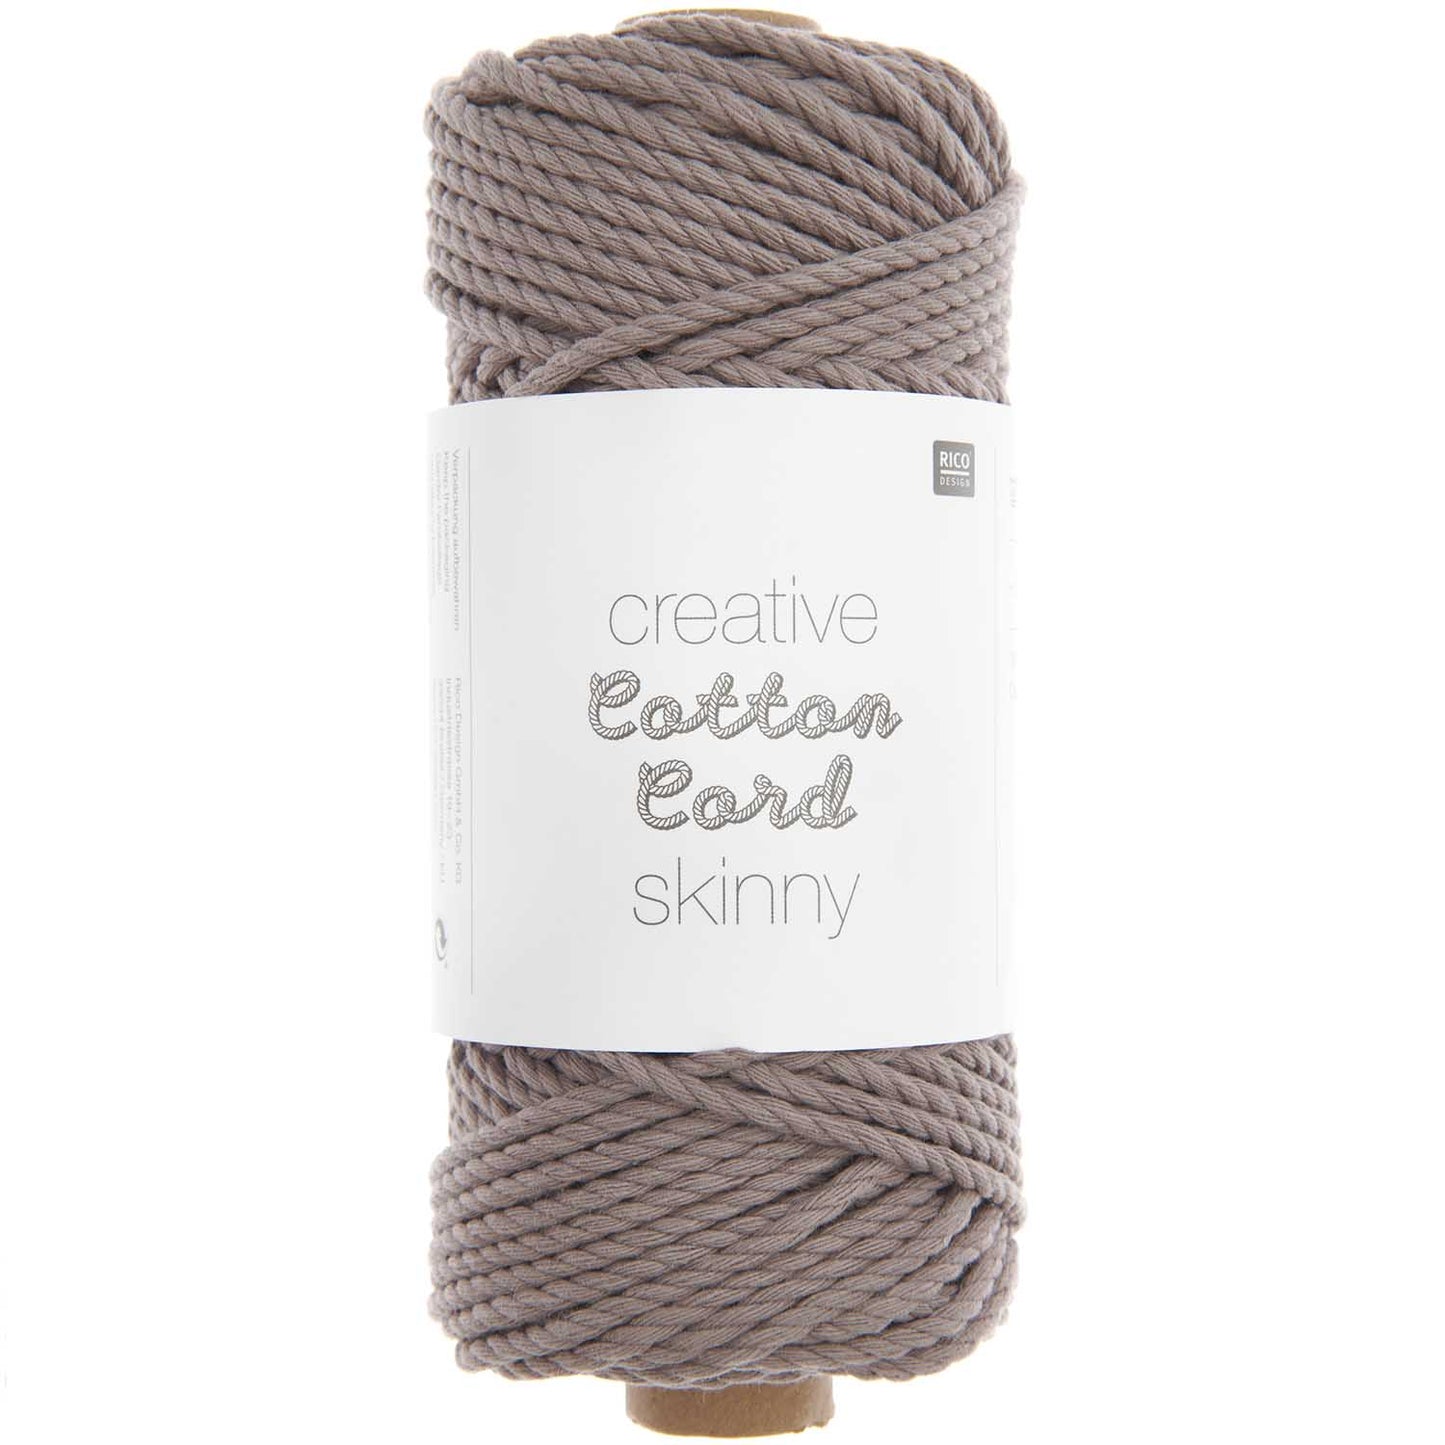 Creative Cotton Cord skinny